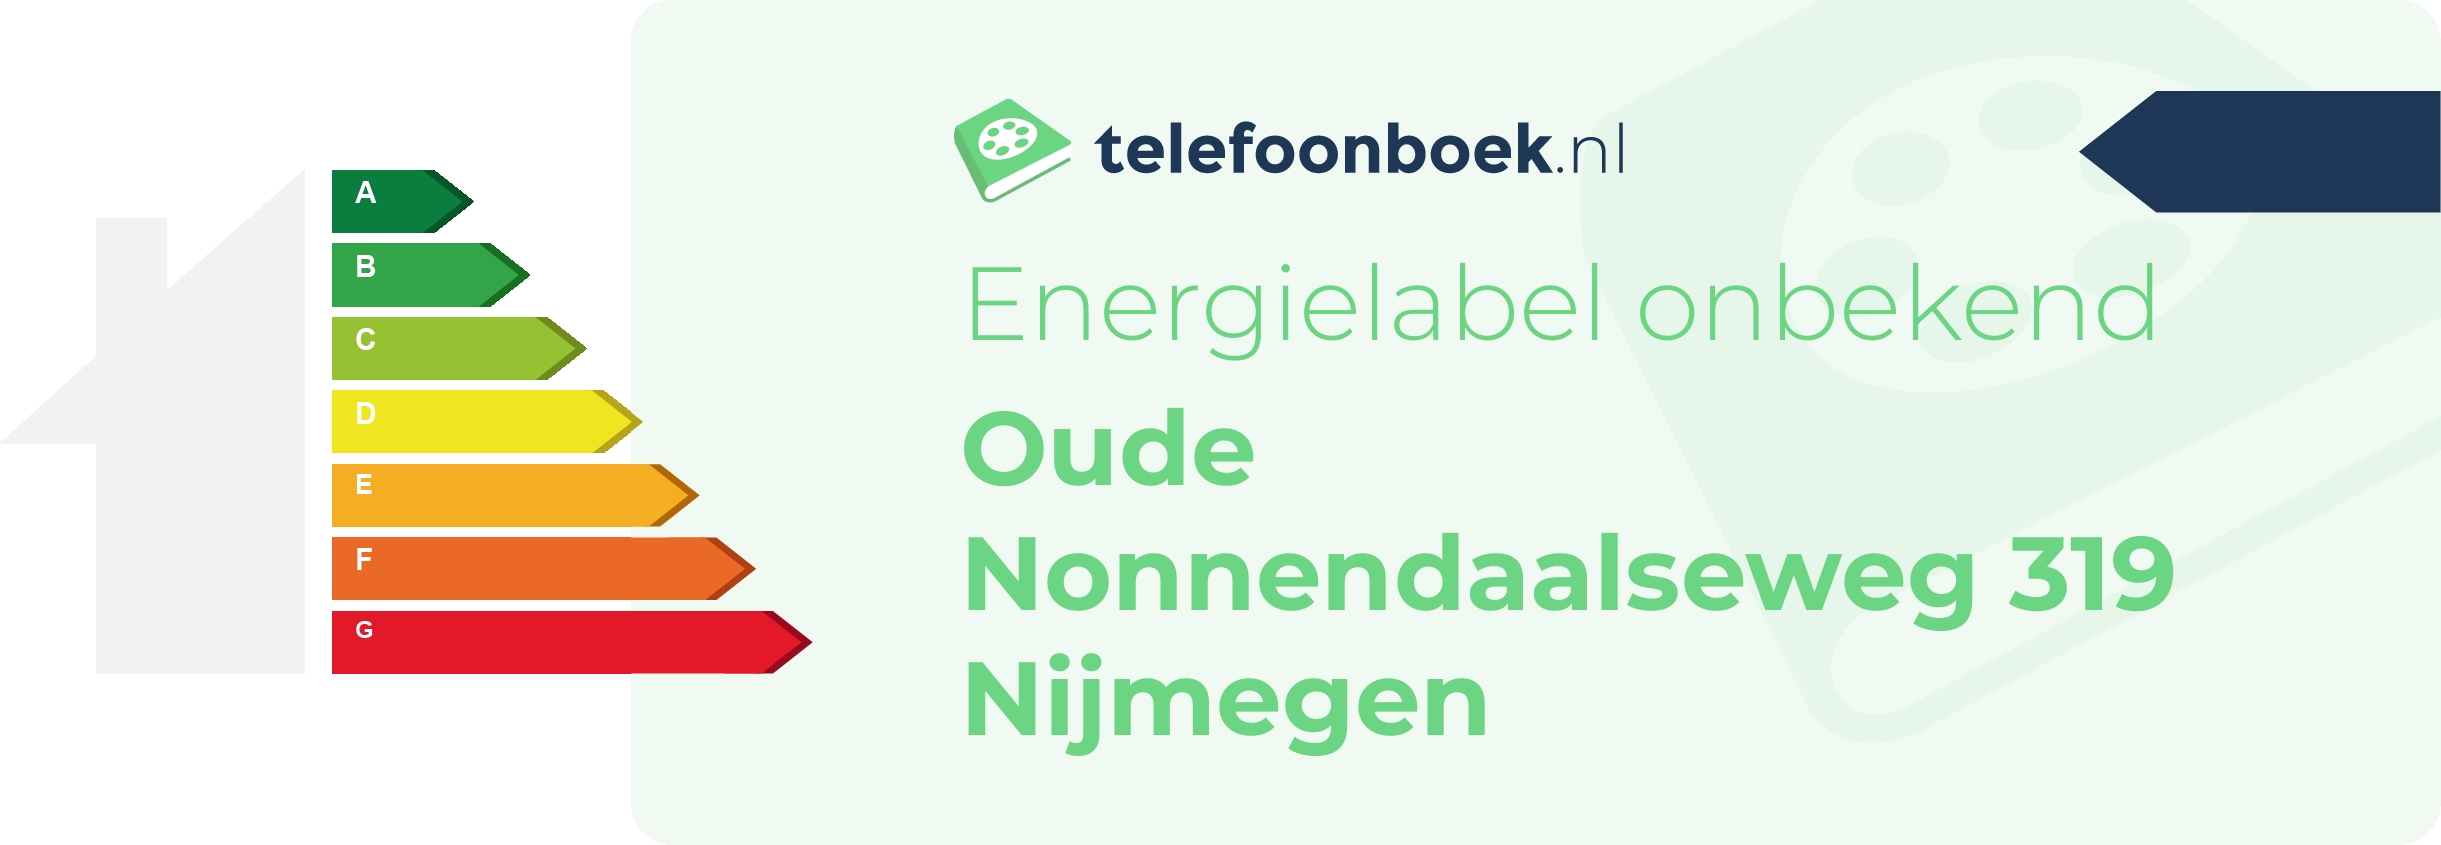 Energielabel Oude Nonnendaalseweg 319 Nijmegen